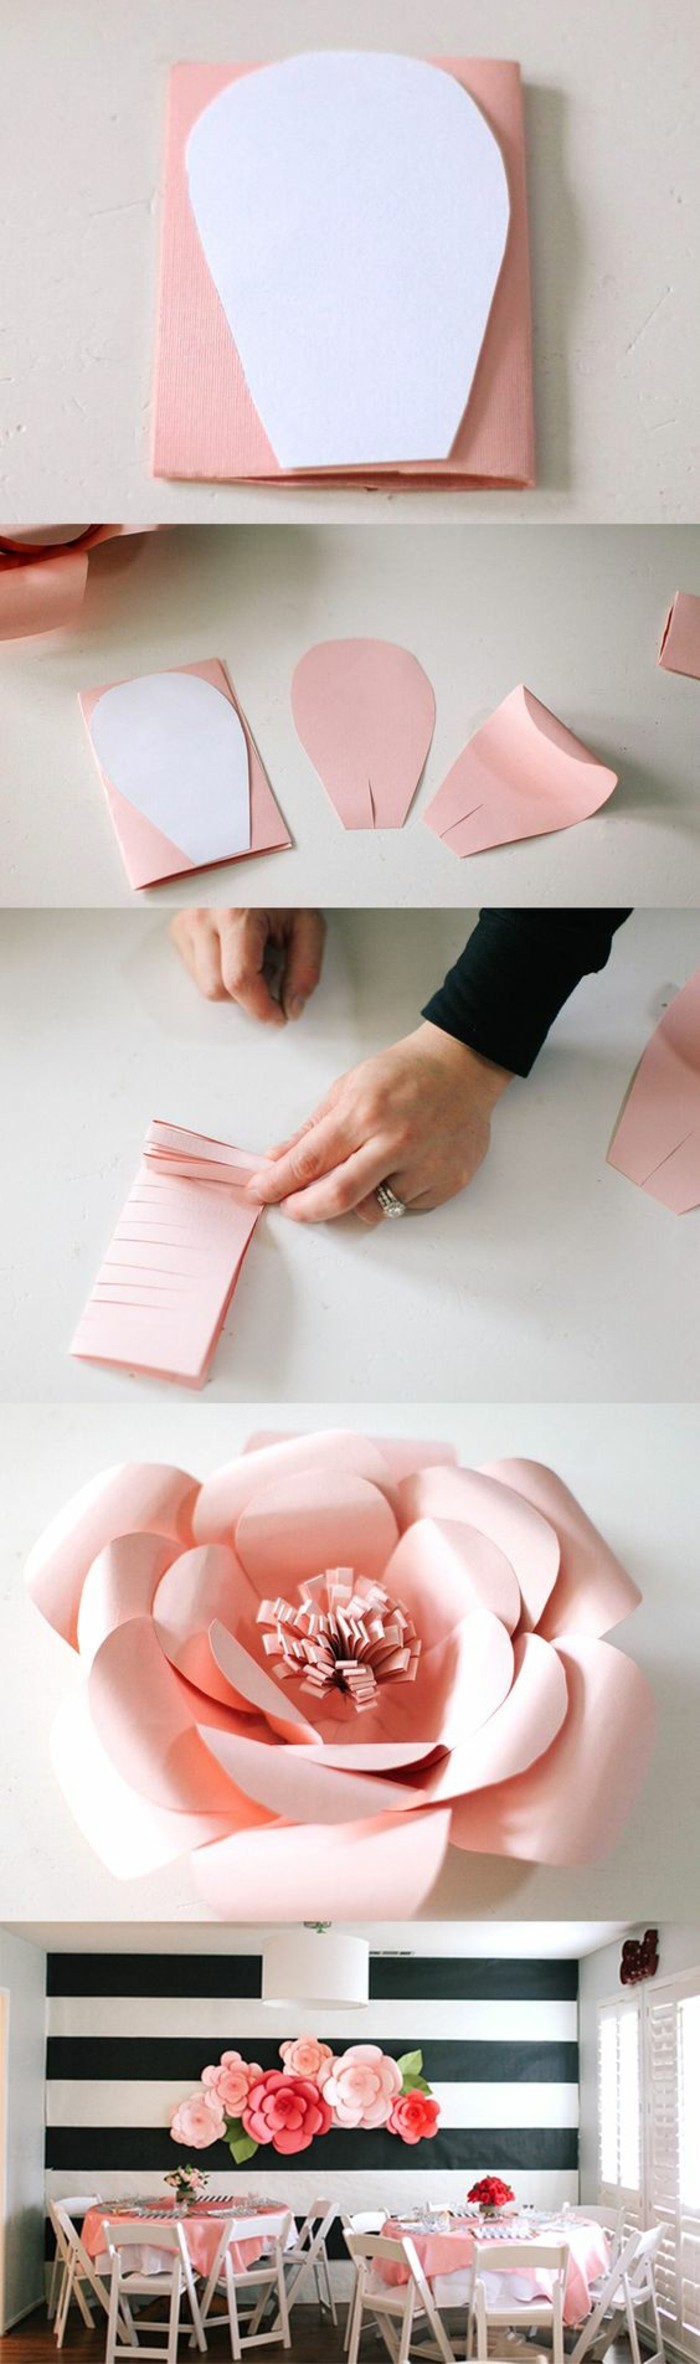 2-wanddeko-selber-machen-fruhlingdeko-bastaln-rosan-aus-papier-basteln